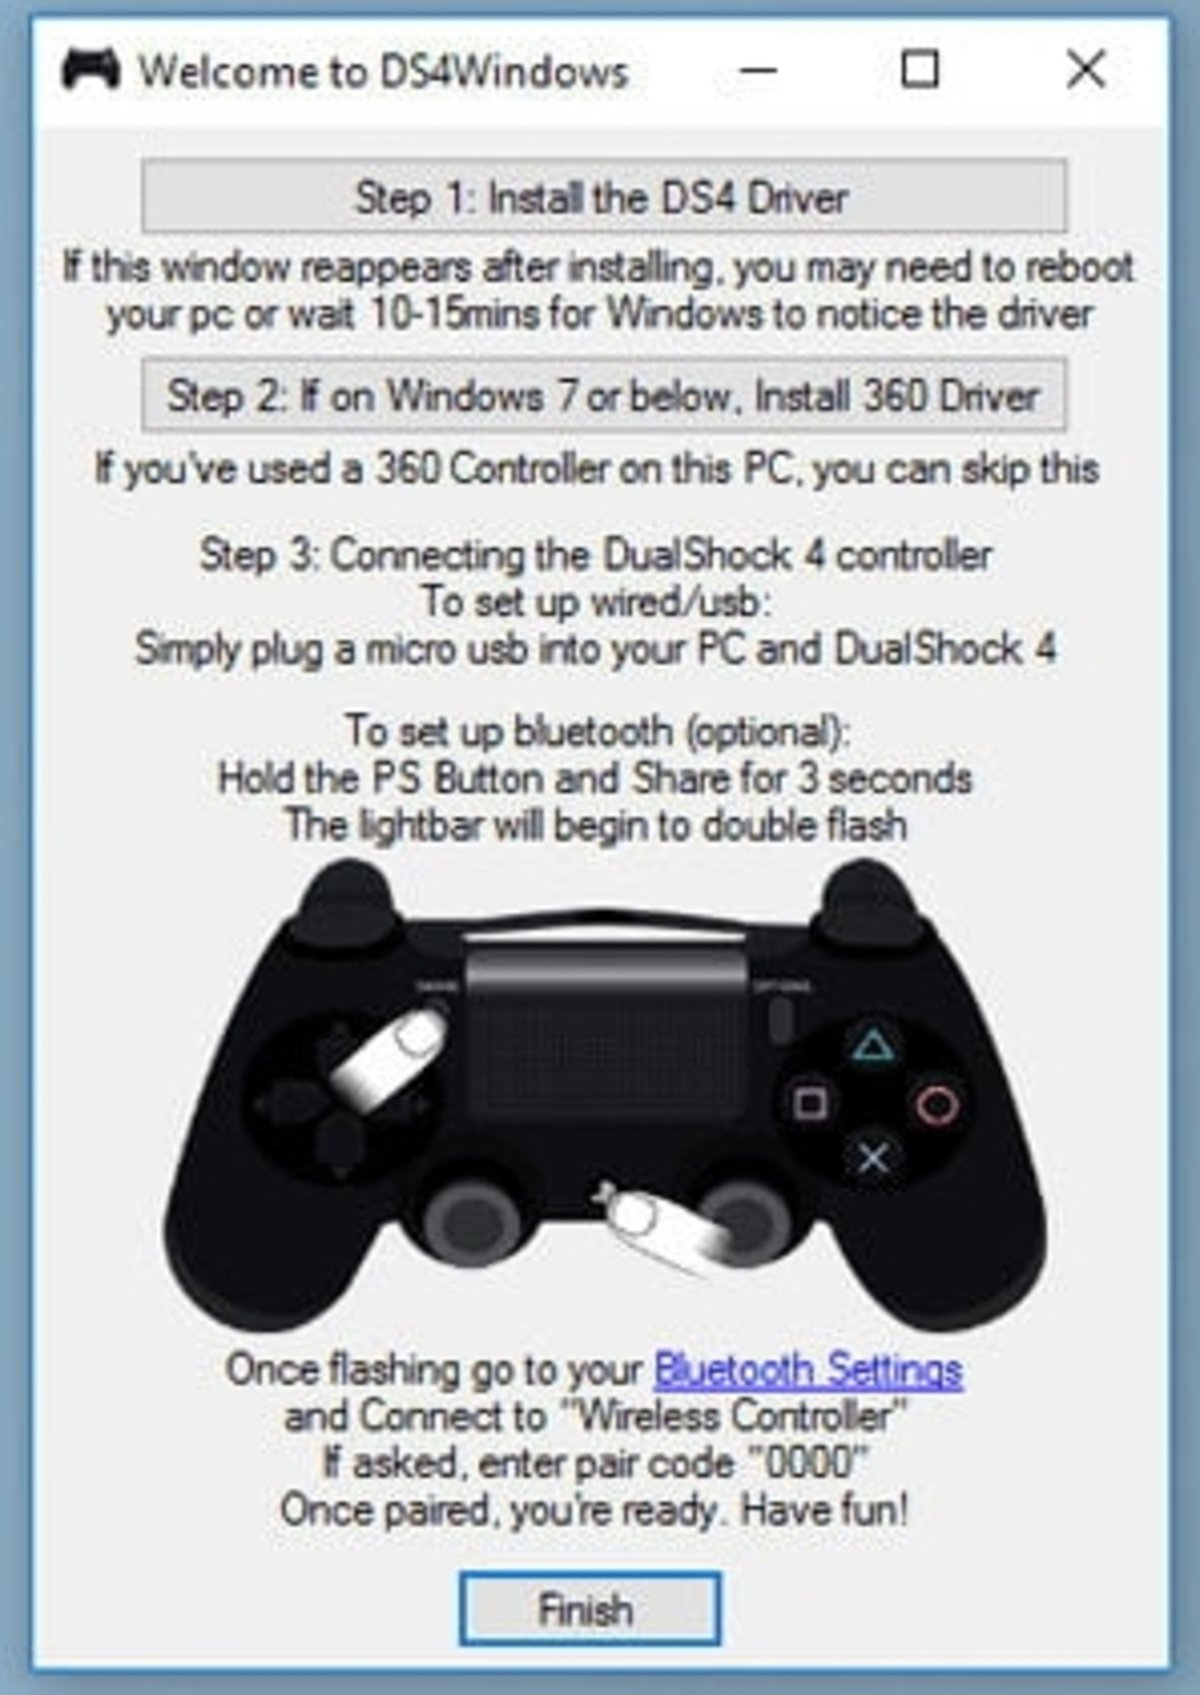 Как подключить джойстик ps4 через bluetooth. Подключить джойстик Dualshock 4 к компьютеру. Подключить геймпад дцал ШОК К ПС. Как подключить контроллер к ps4. Подключить геймпад ps4 Dualshock к Windows 7.